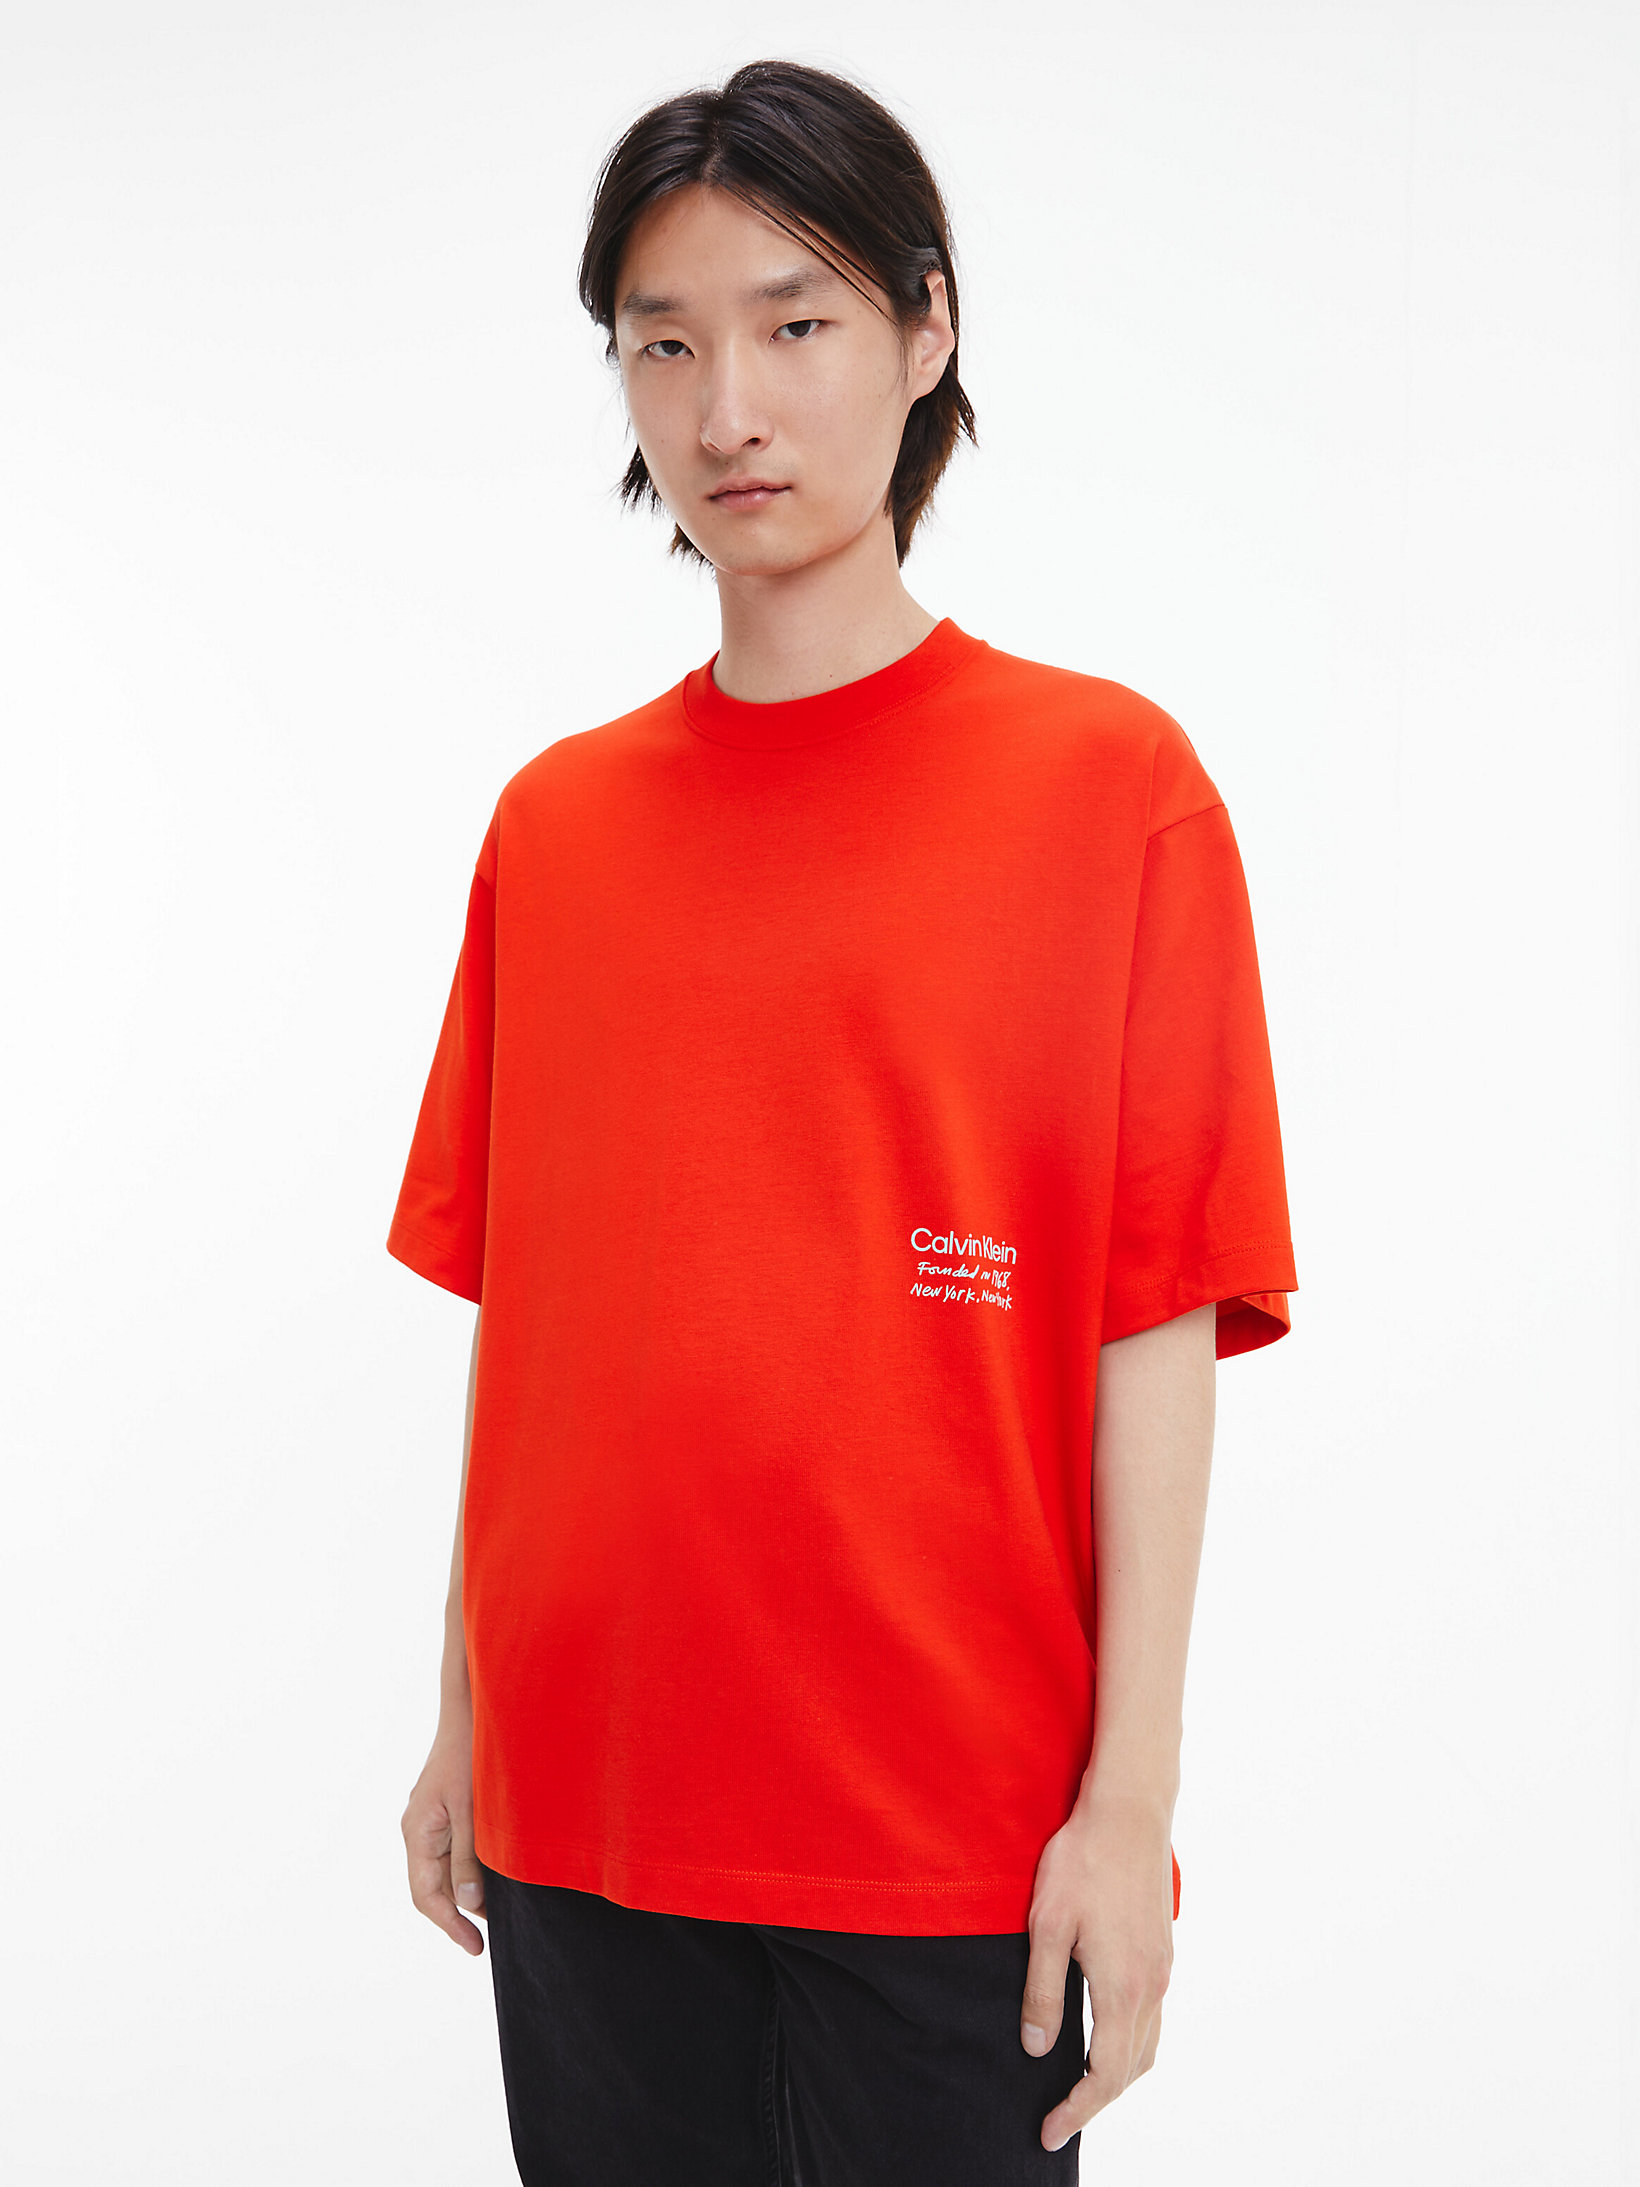 Dark Fuchsia Unisex Printed T-Shirt - CK Standards undefined men Calvin Klein